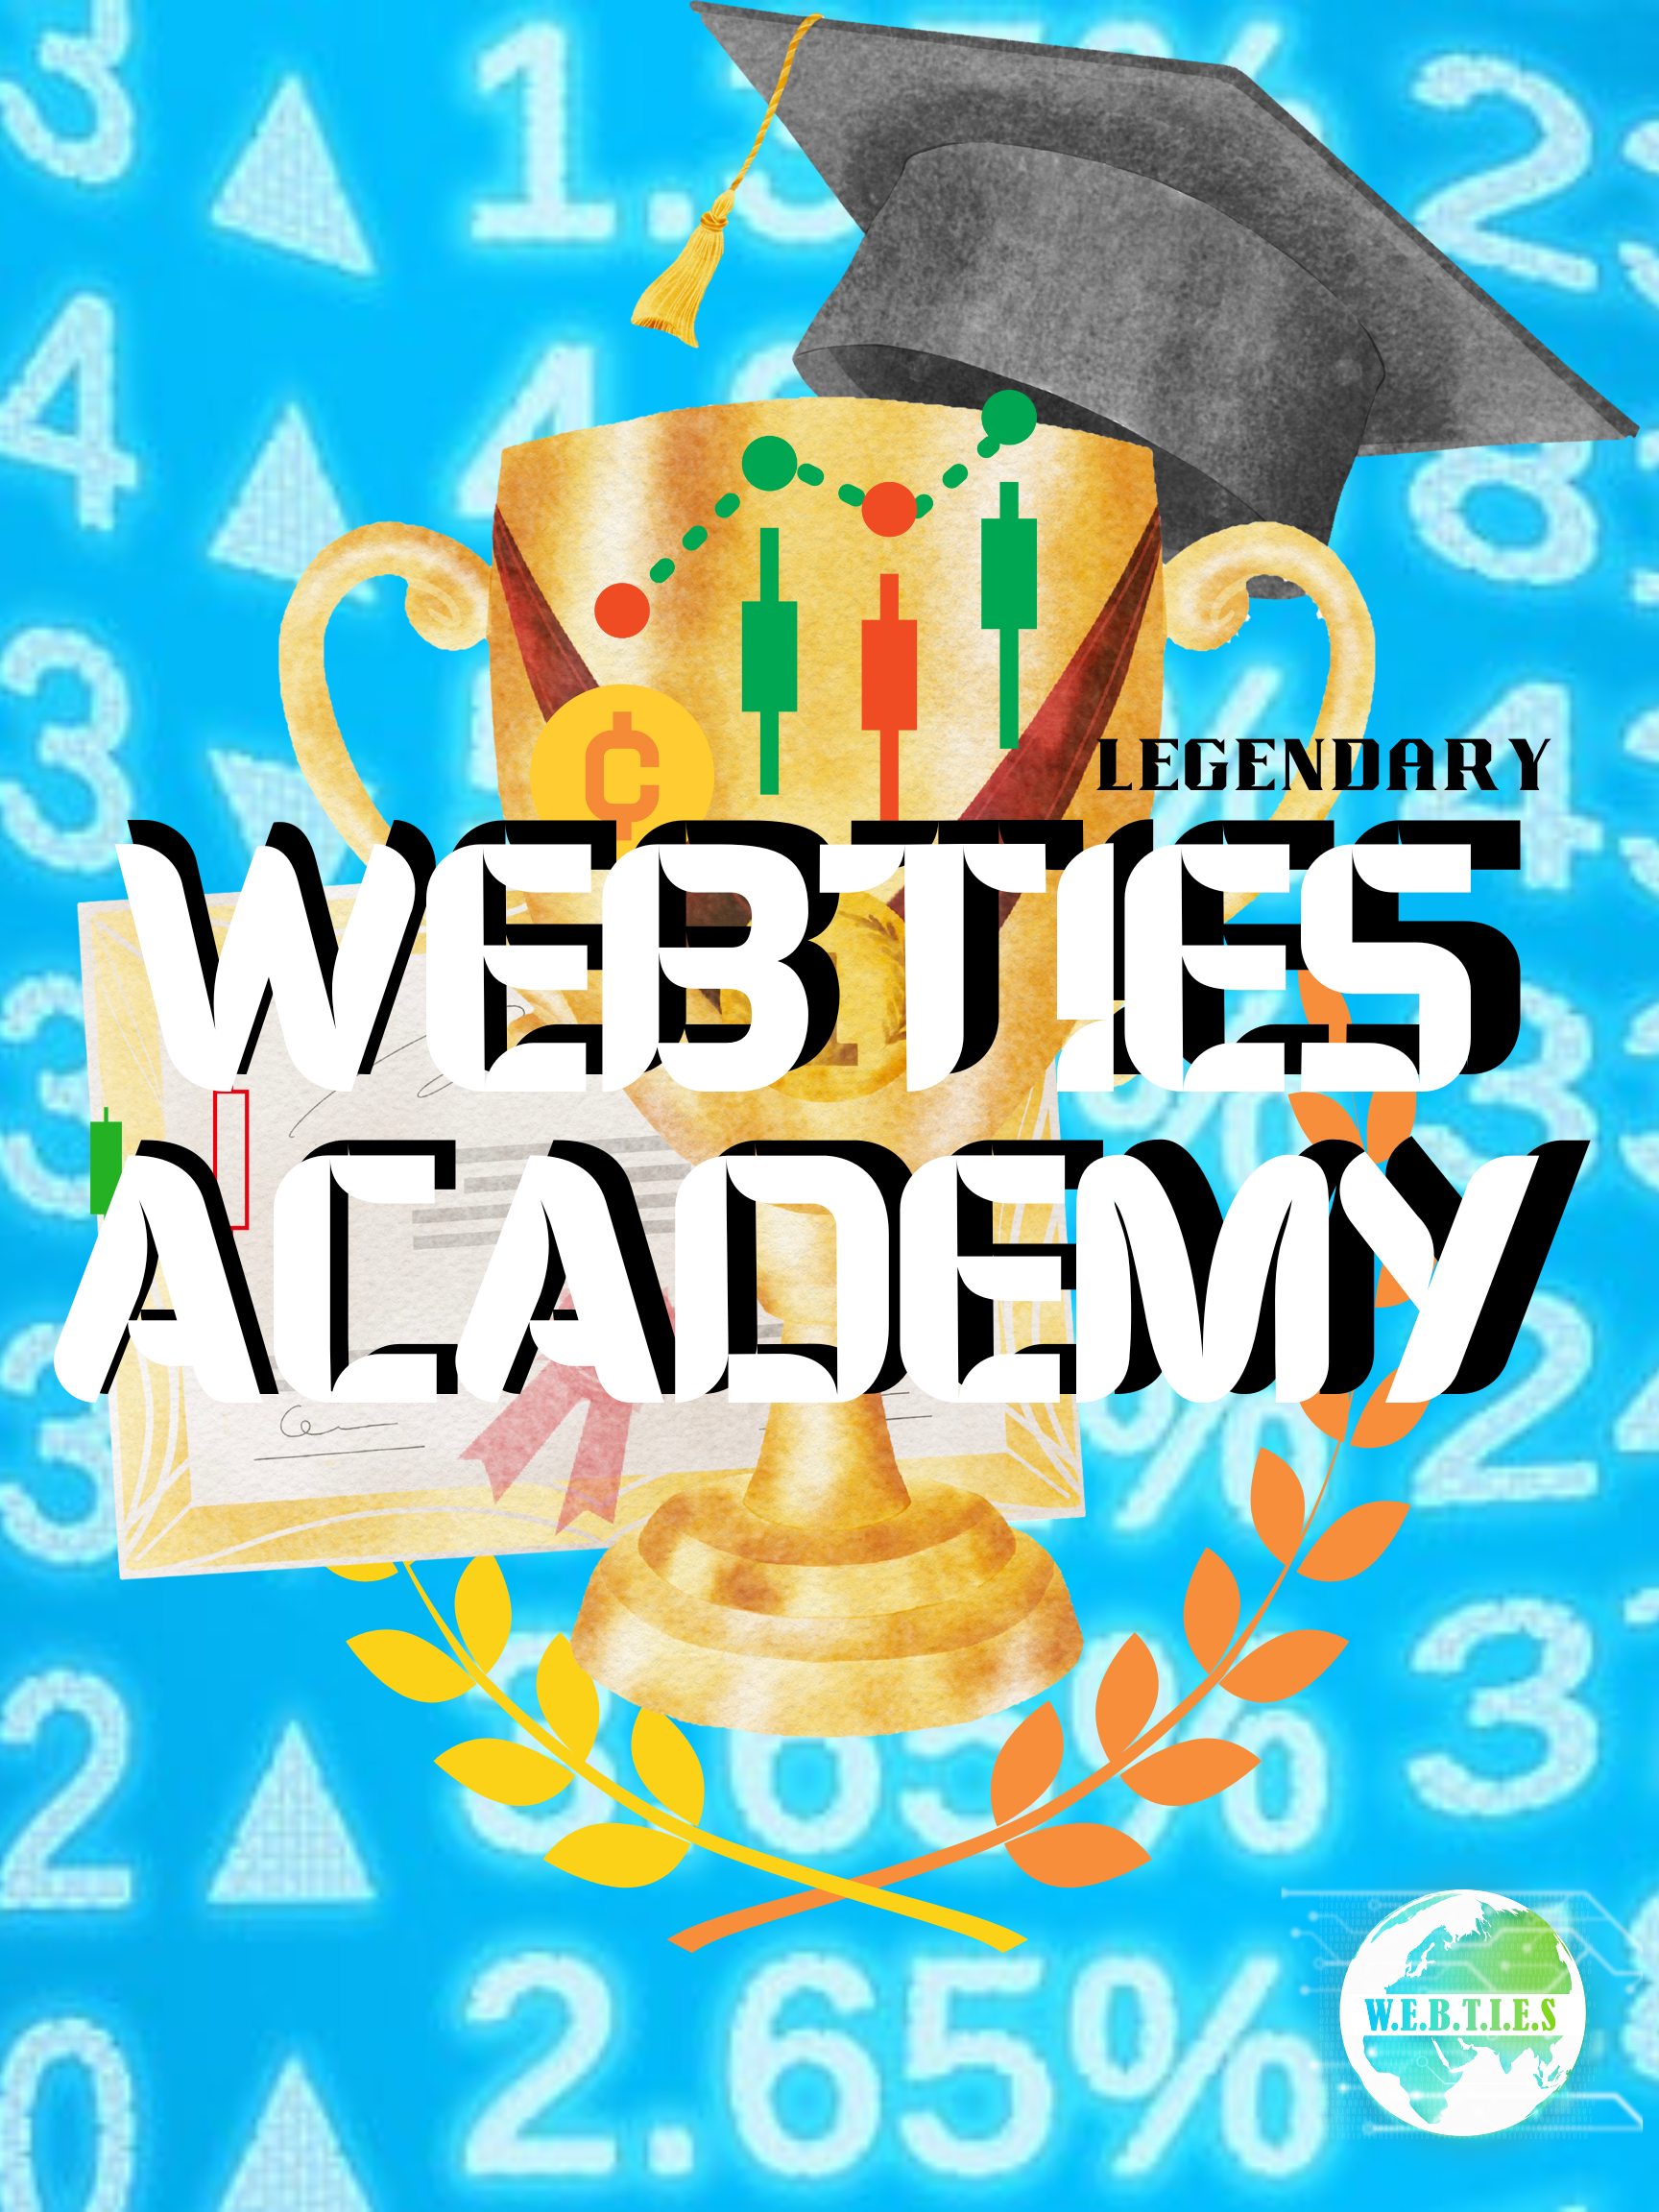 WebTies Academy (1)